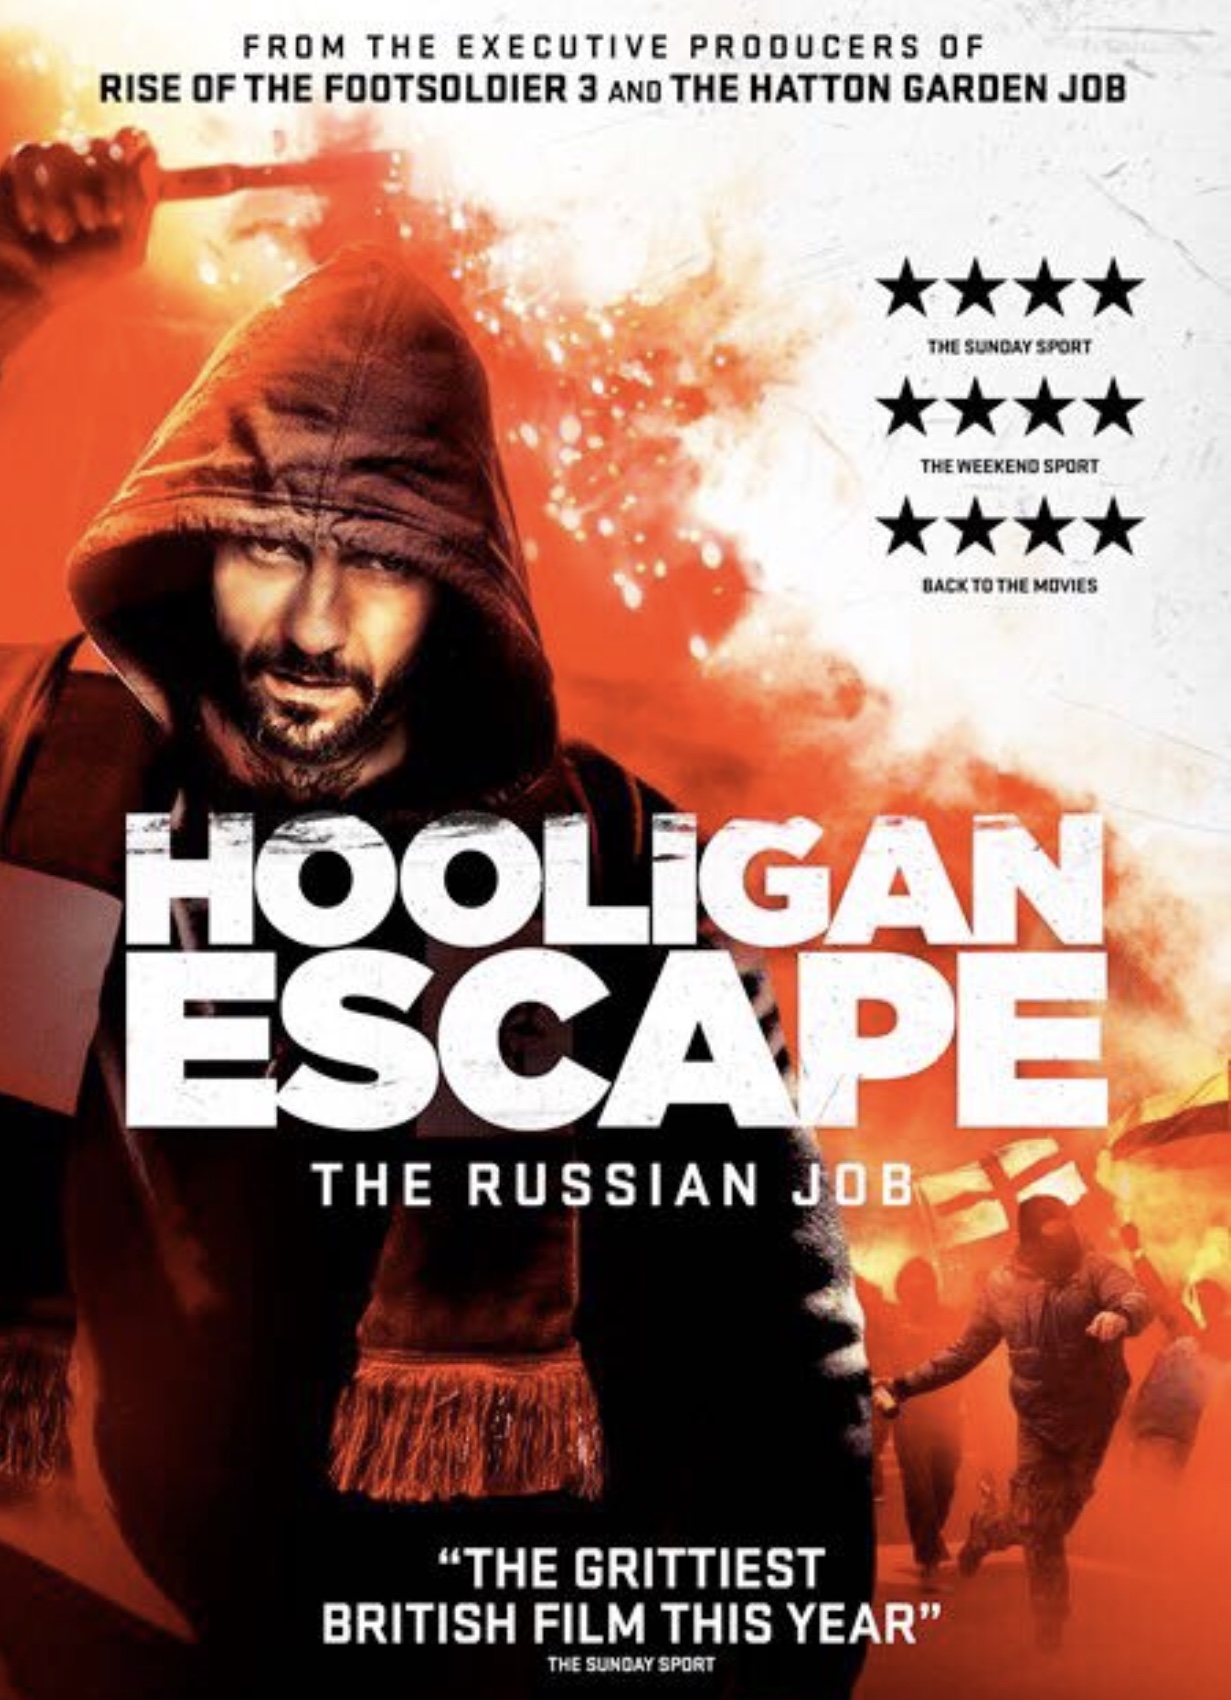 Hooligan Escape the Russian Job (2018) Screenshot 4